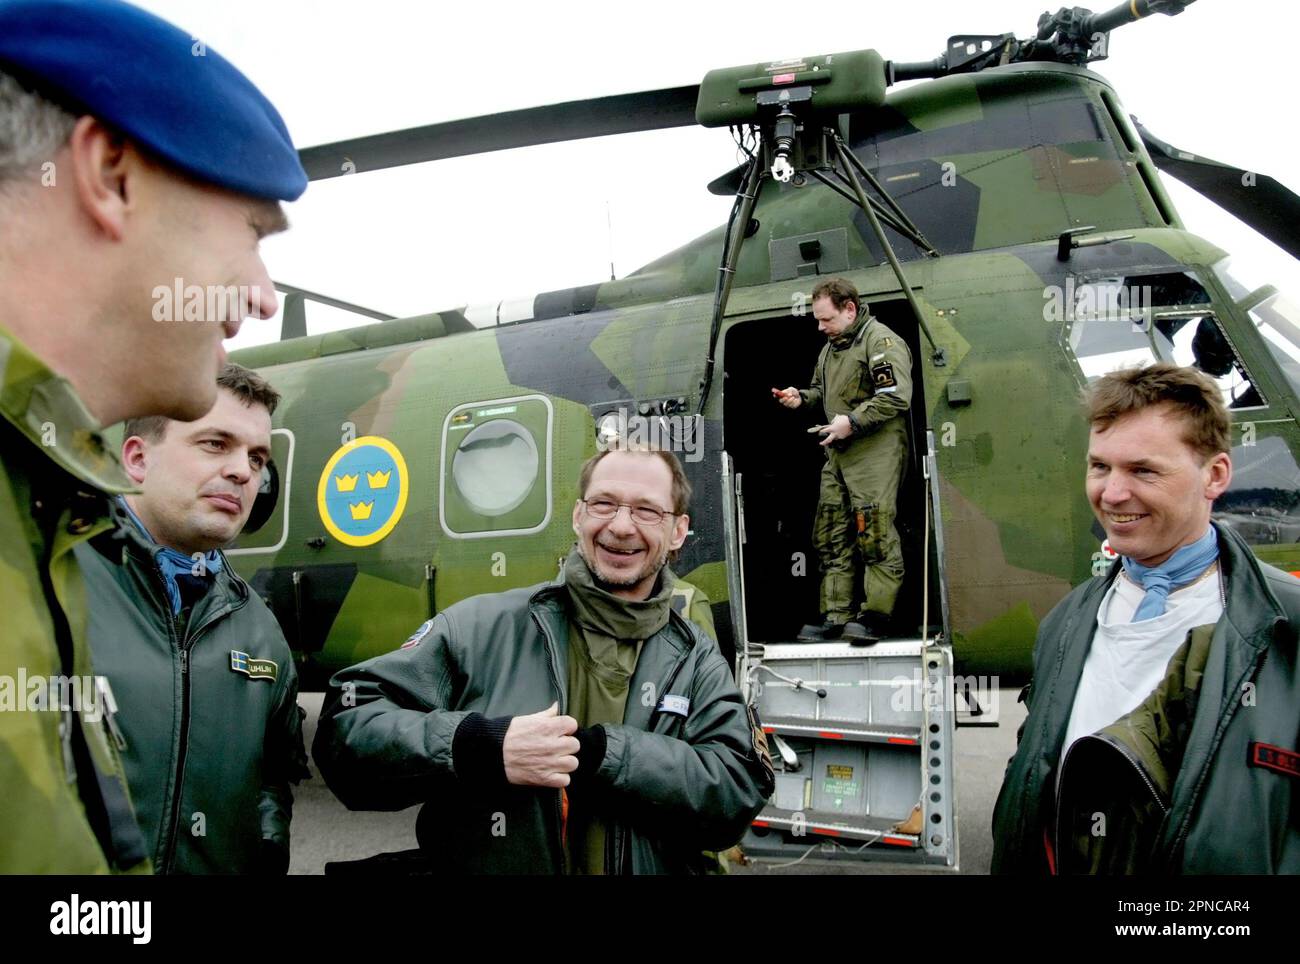 L'elicottero dell'aeronautica svedese 4, HKP 4, dal battaglione dell'elicottero, base navale di Berga. HKP 4 è stato utilizzato in caccia sottomarina e missioni di salvataggio come il disastro Estonia. Nella foto: L'equipaggio dell'elicottero fuori dall'elicottero. Foto Stock